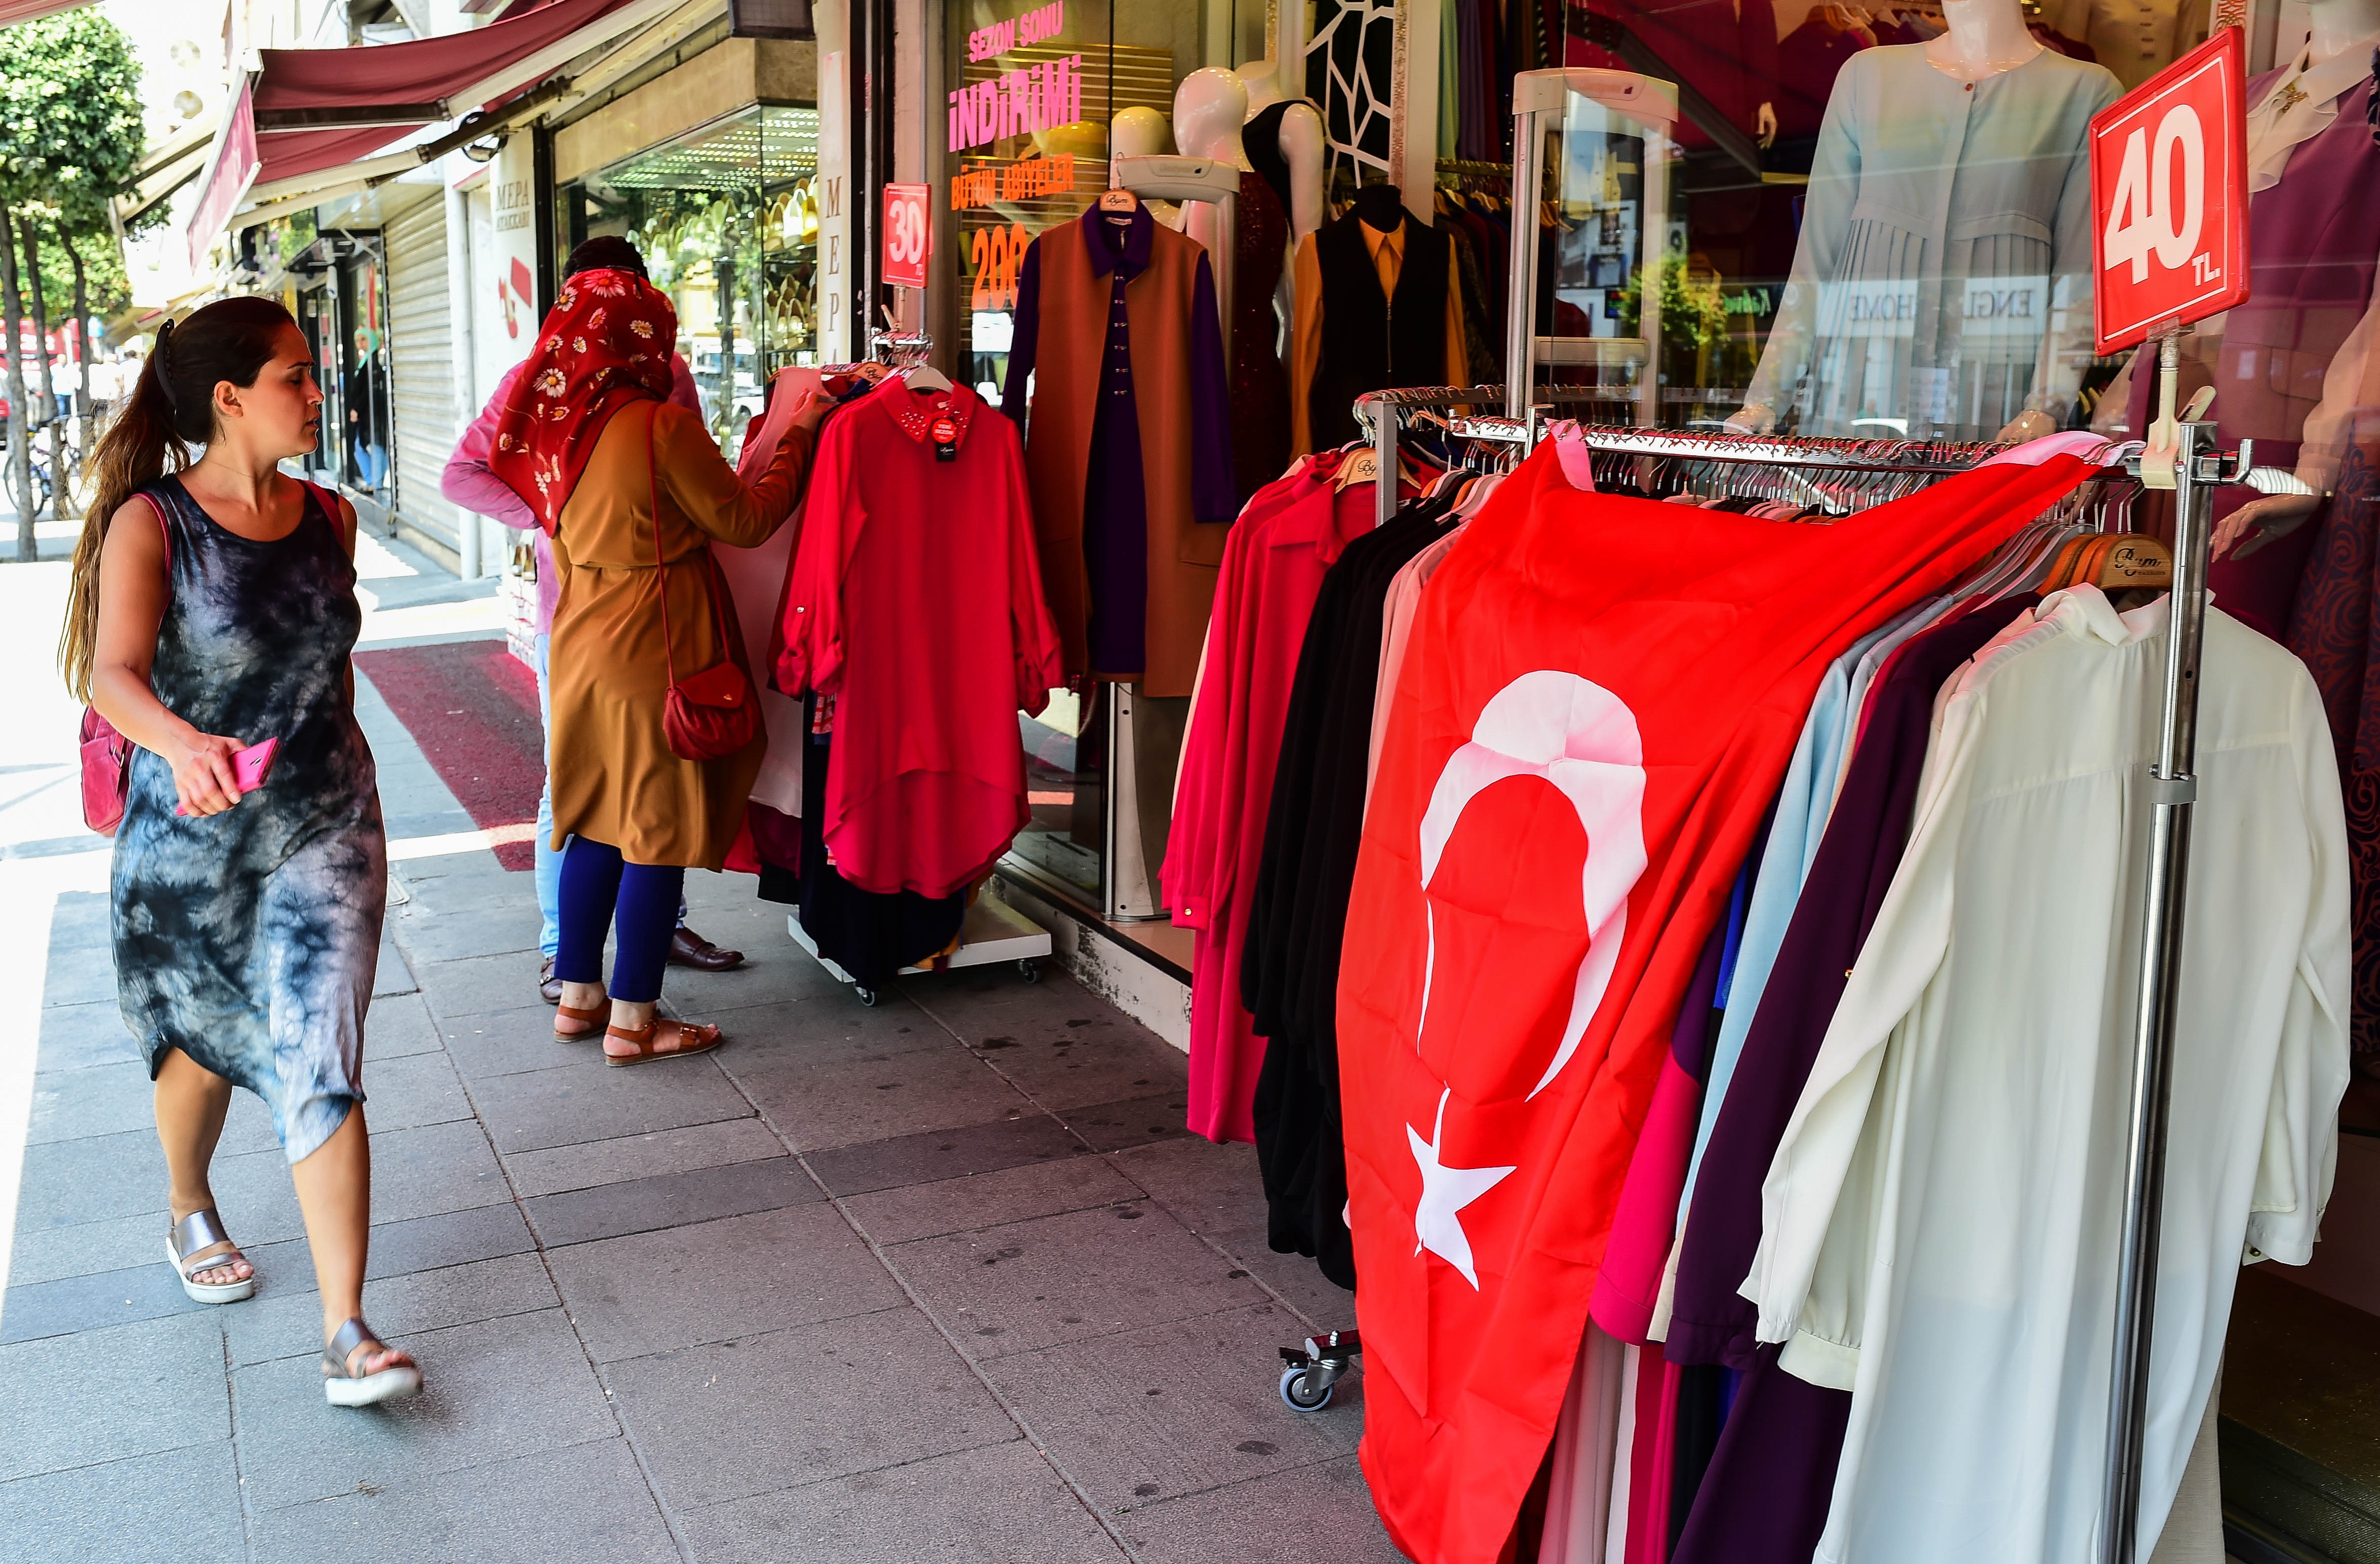 Турчин рита и удря жена в автобус в Истанбул, защото била по шорти. Той крещял “Тези, които носят шорти, трябва да умрат“. Жертвата му е медицинска сестра. Как обаче изглеждат жените в Истанбул - вижте